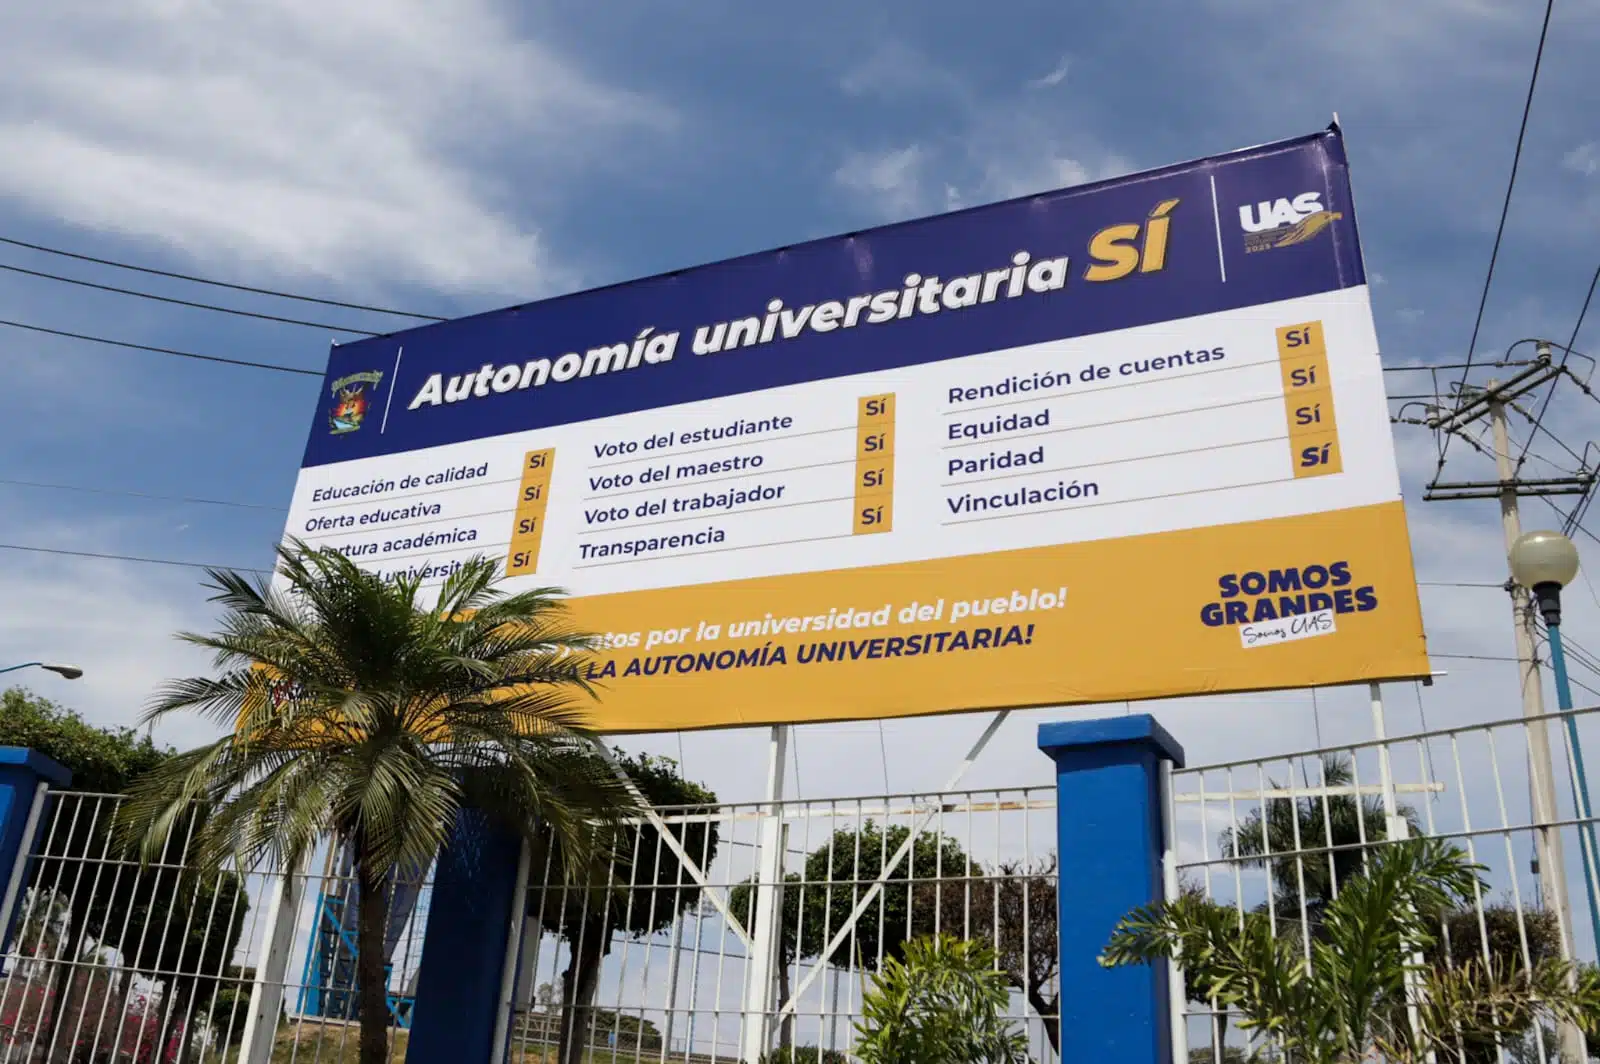 Autonomía universitaria UAS